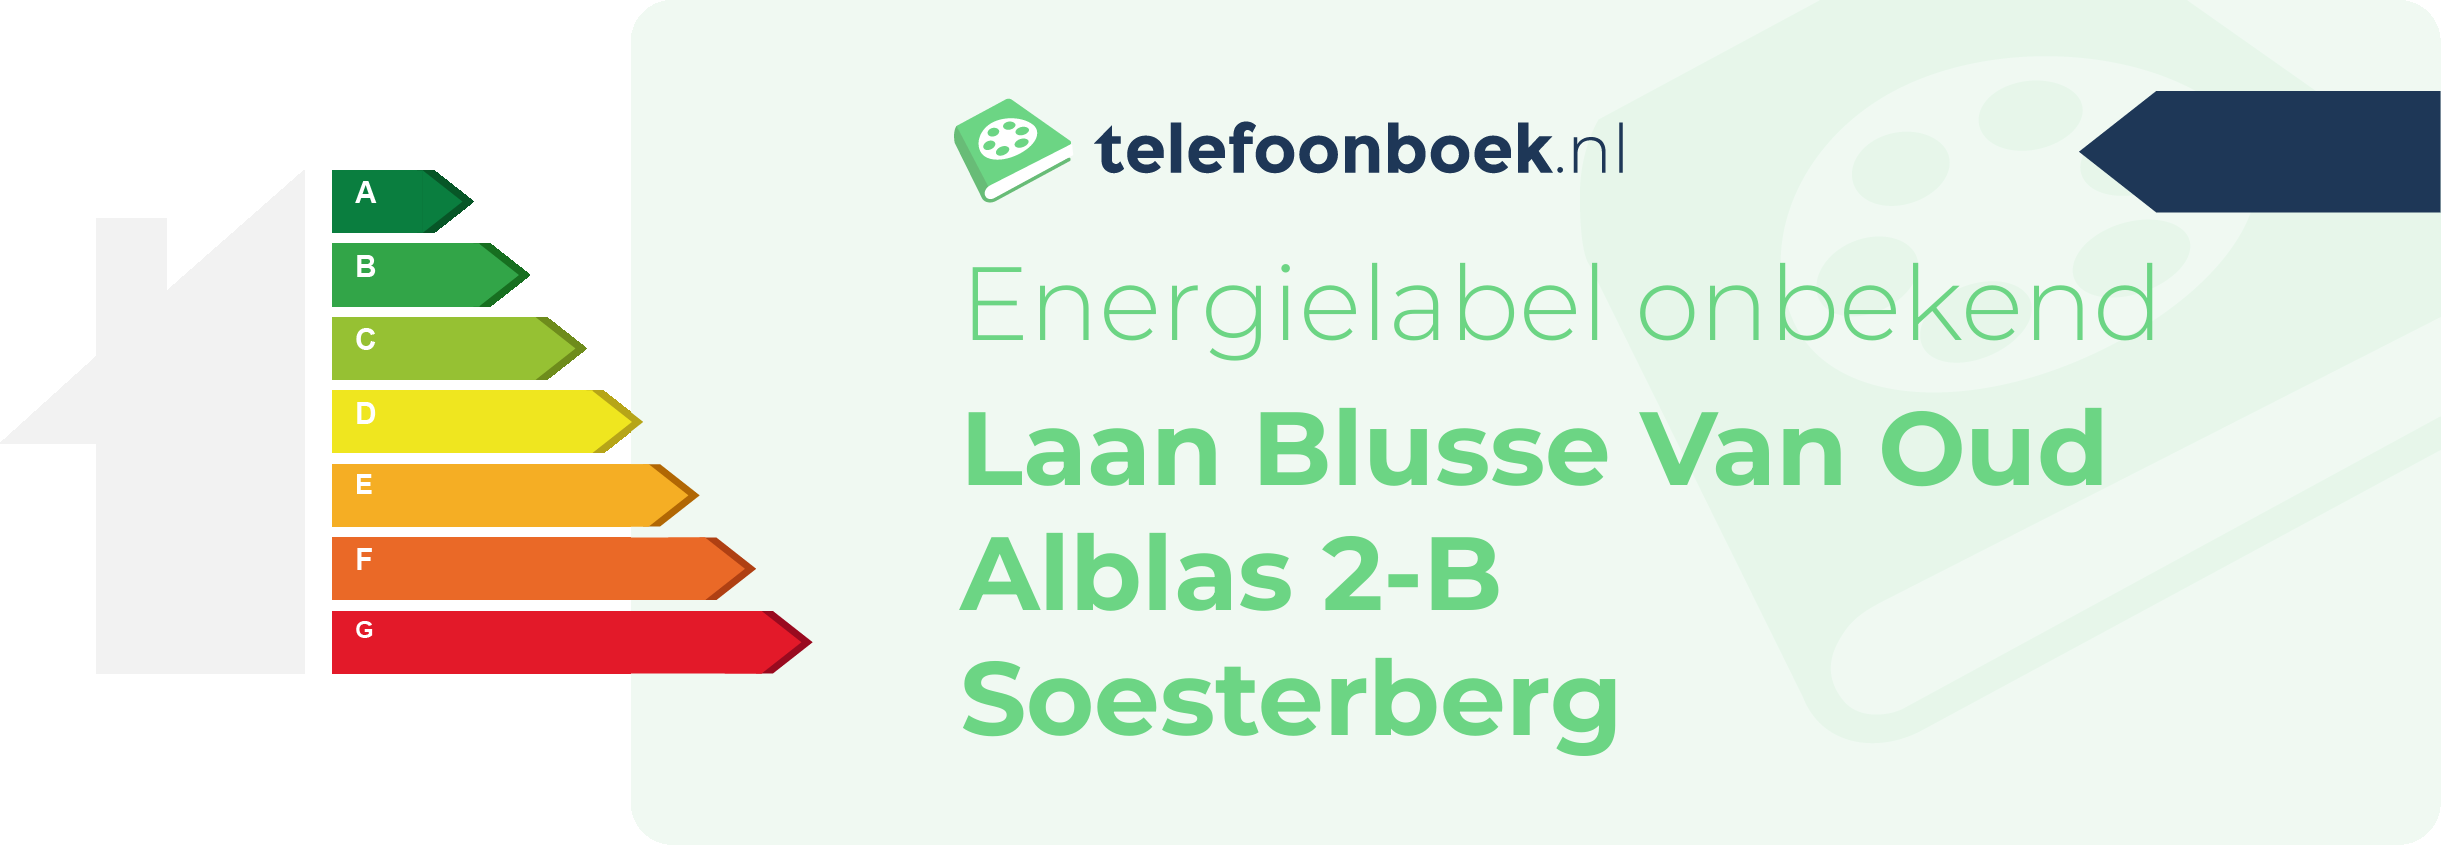 Energielabel Laan Blusse Van Oud Alblas 2-B Soesterberg